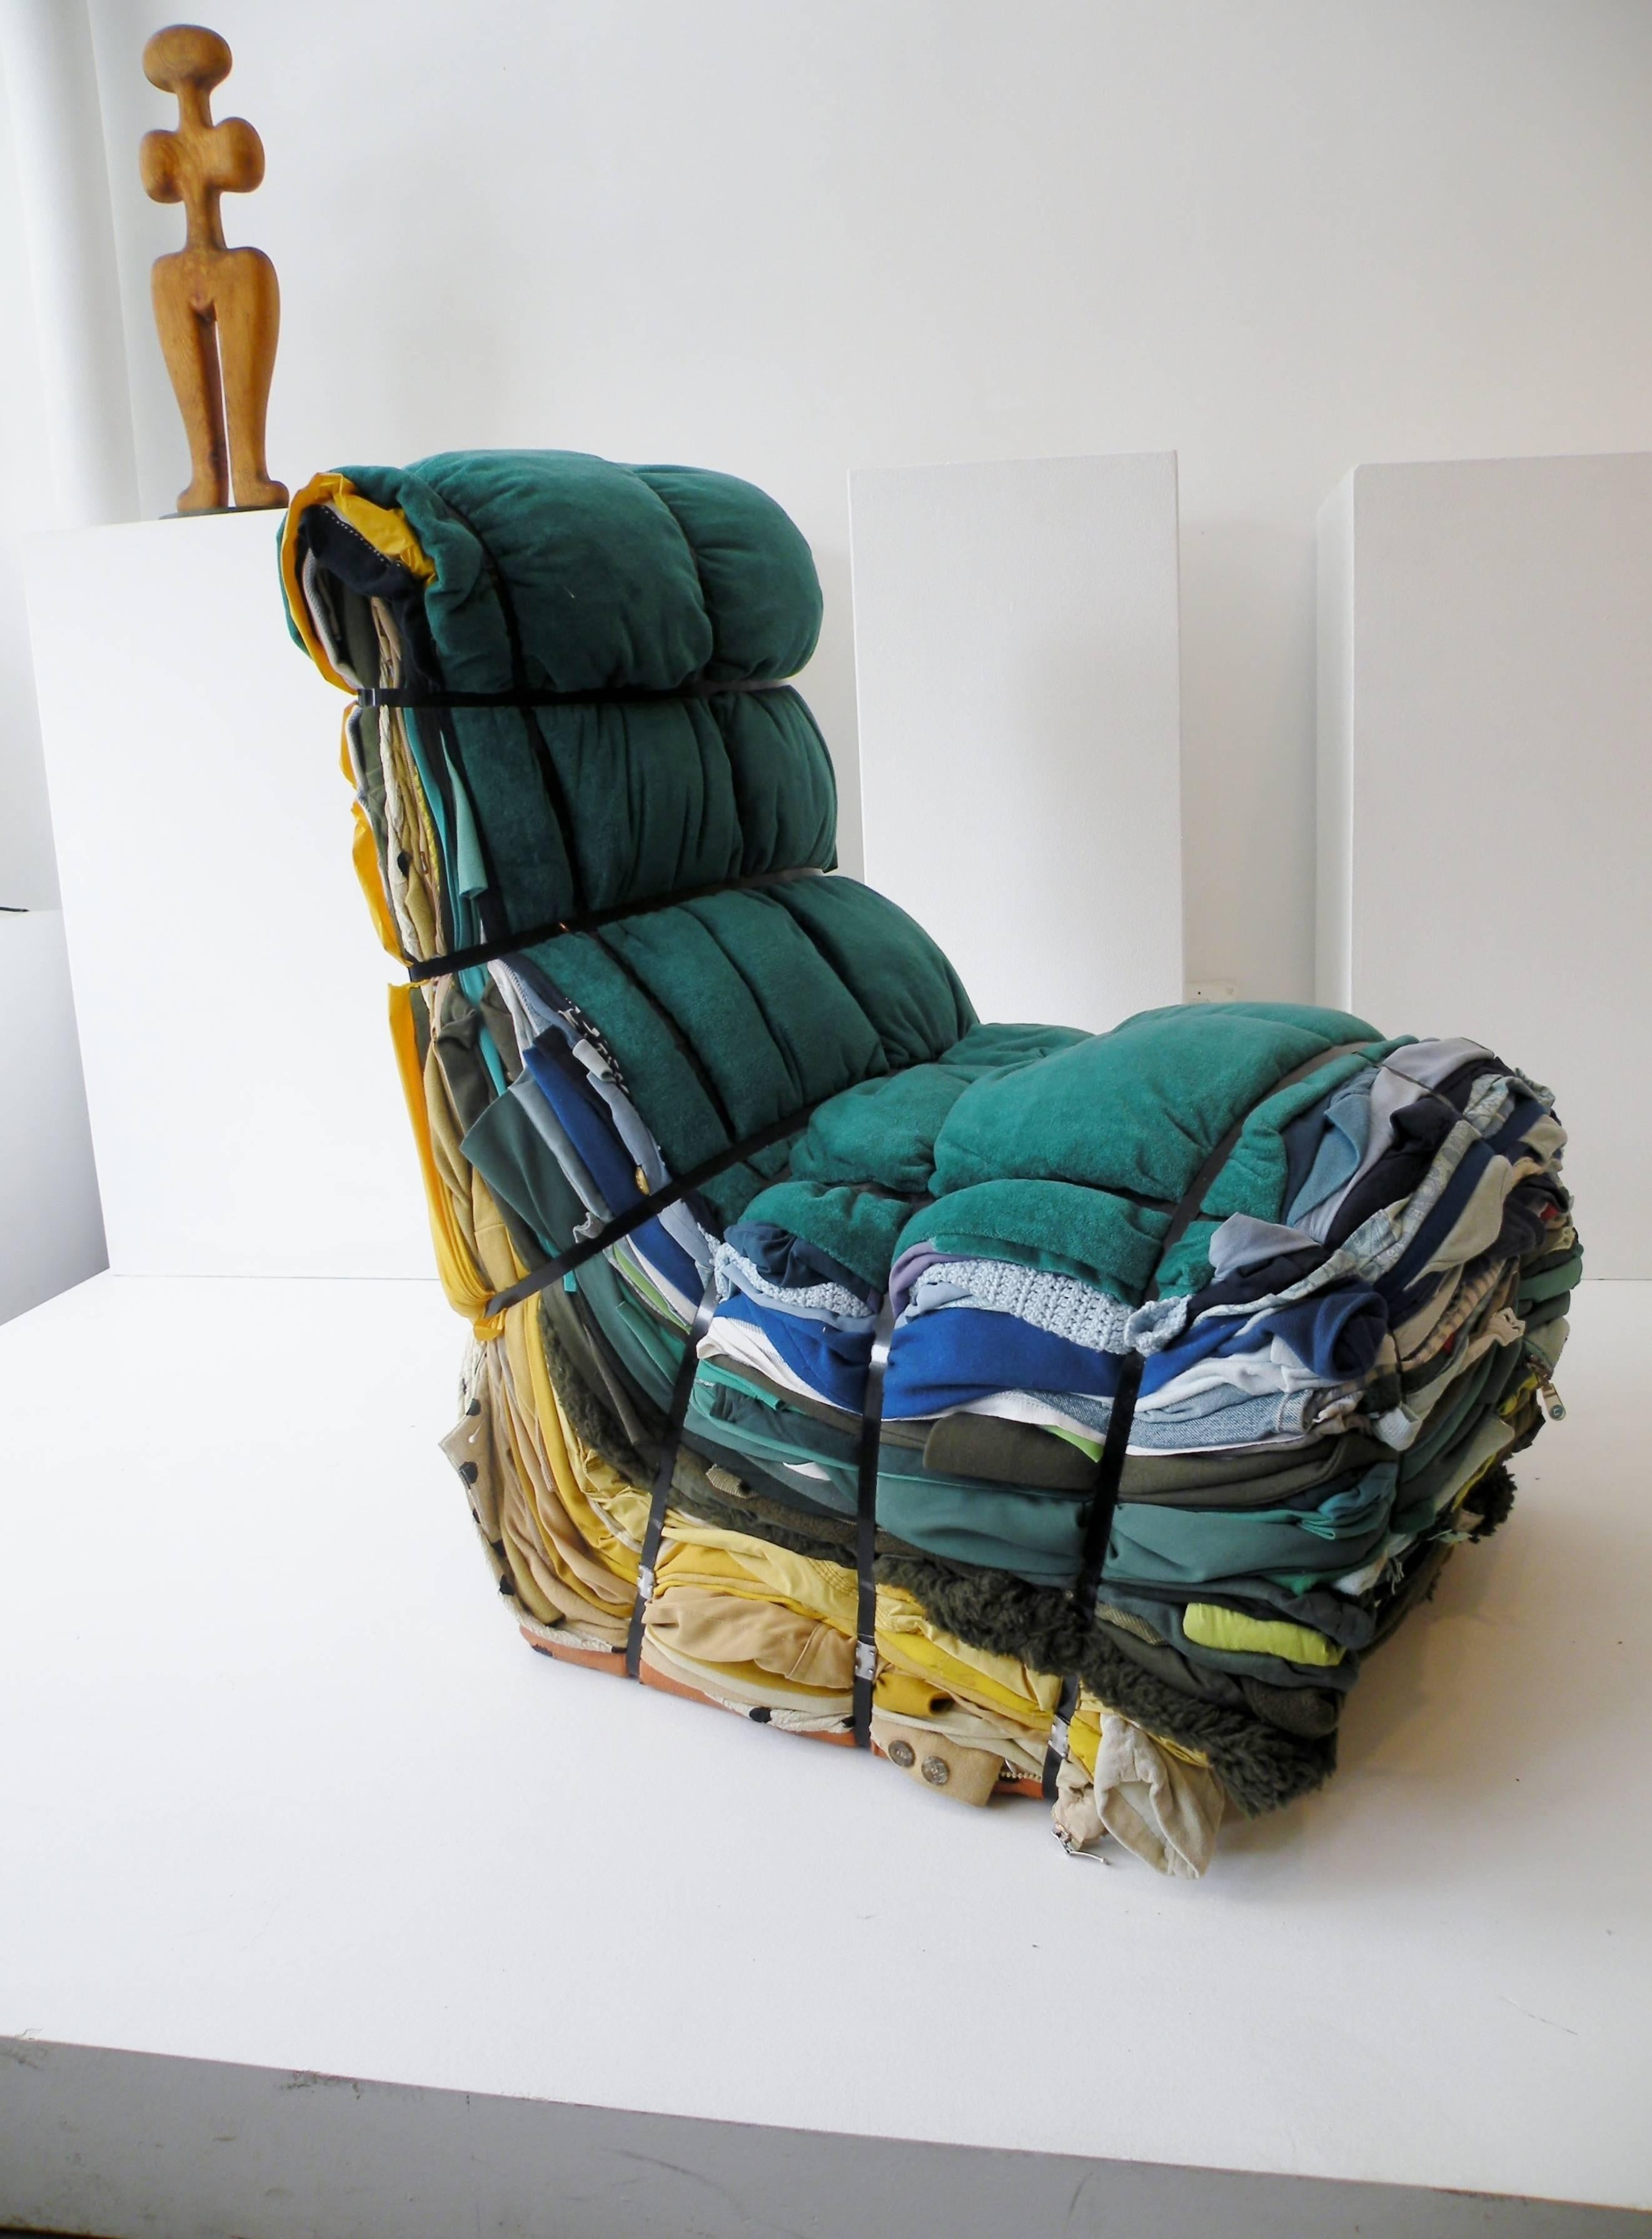 Tejo Remy (Néerlandais, né en 1960) a conçu une chaise en chiffon pour Droog design et l'a produite en 1991. Design iconique, chaque pièce est fabriquée individuellement à la main à partir de plus de 100 livres de chiffons de vêtements liés par des